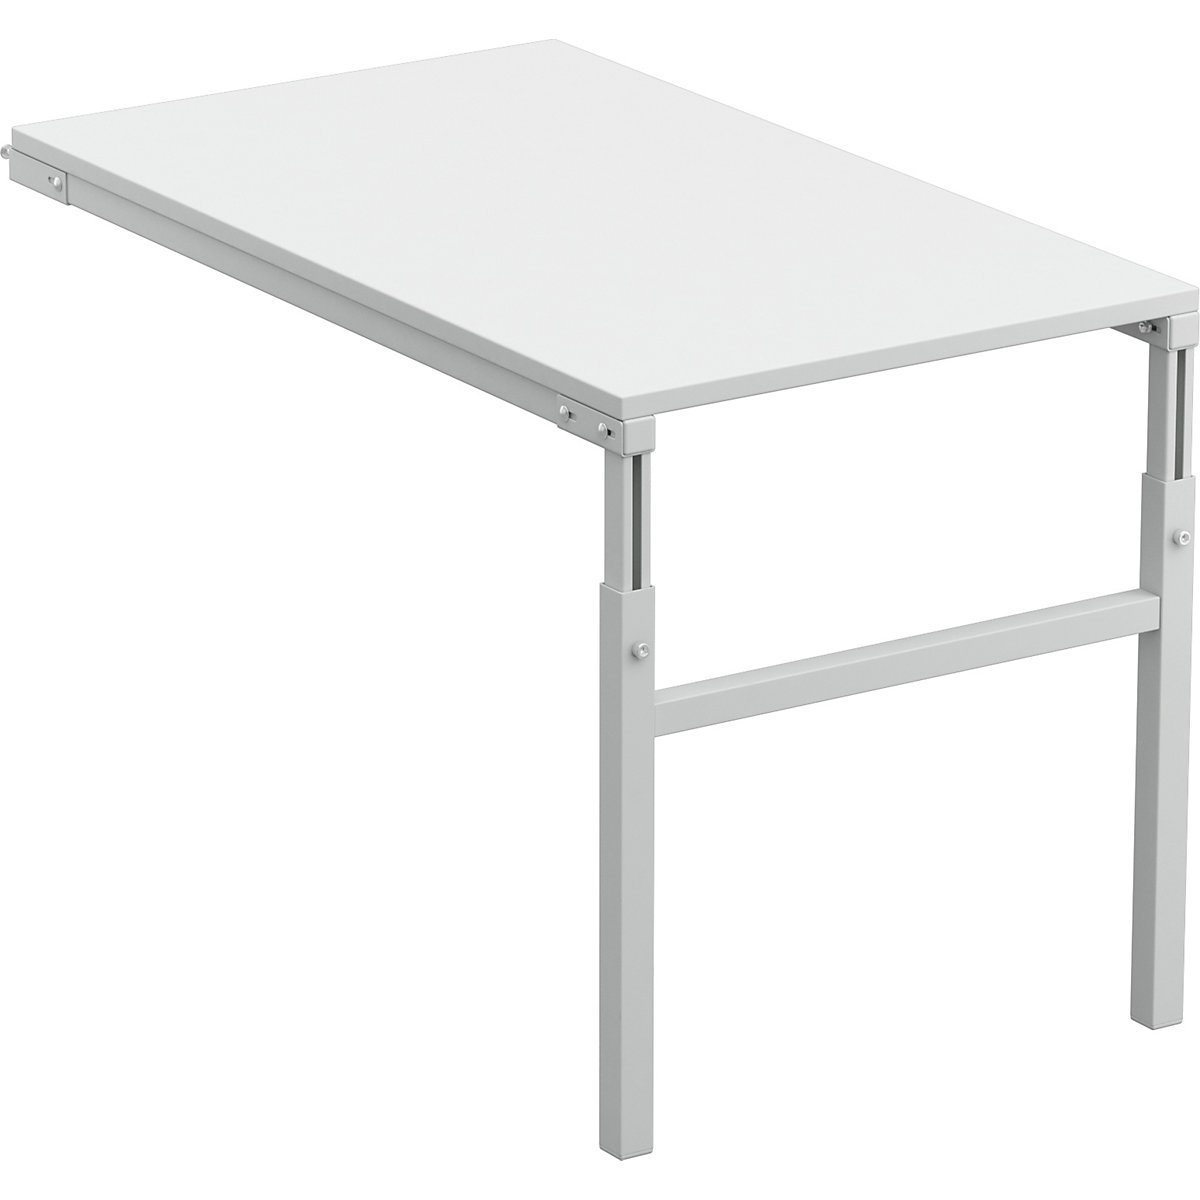 Prídavný stôl ESD do uhla – Treston, rozsah prestavenia výšky 650 – 900 mm, š x h 1200 x 700 mm-2